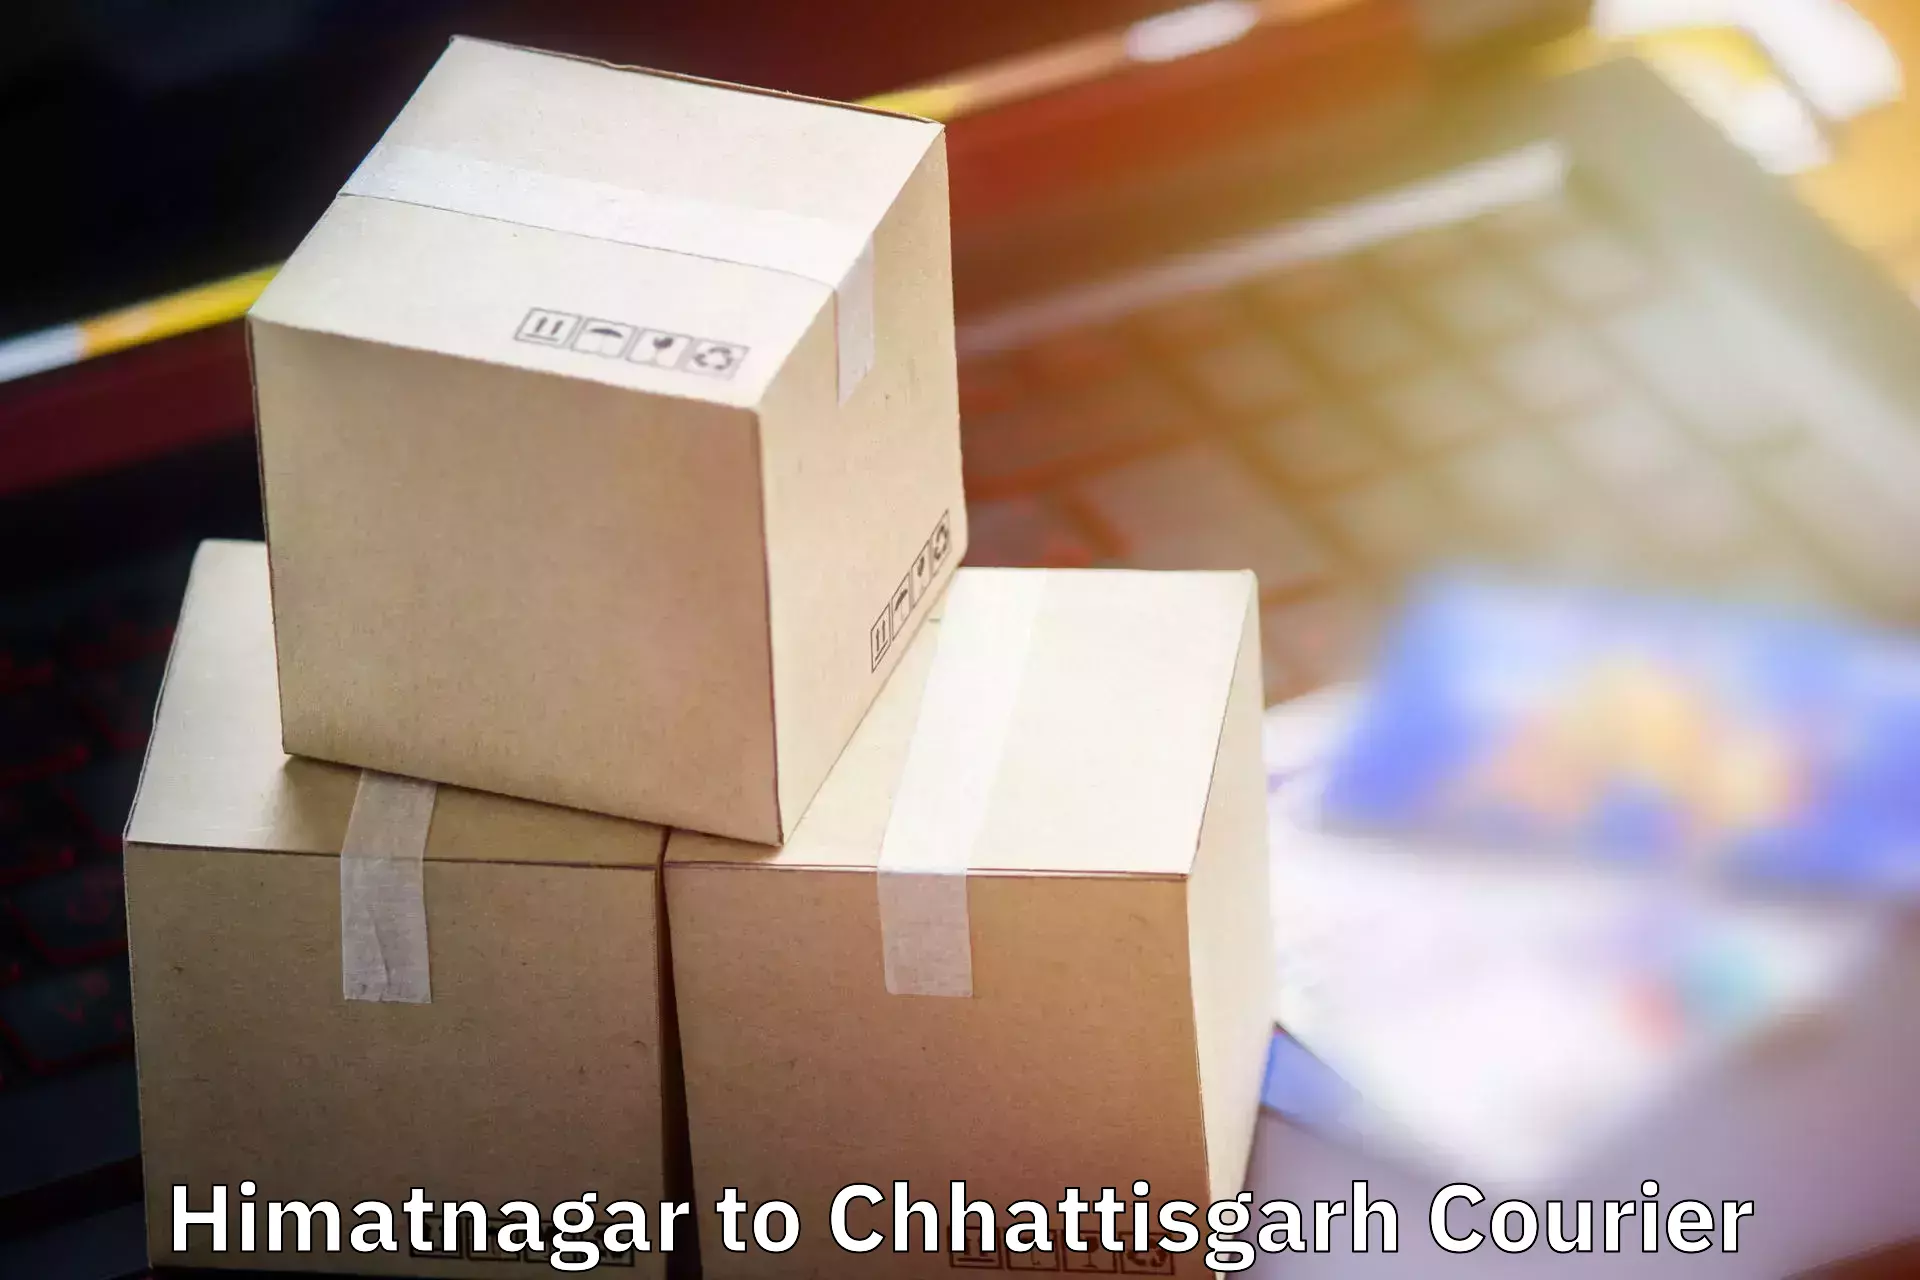 Baggage handling services Himatnagar to Mahasamund